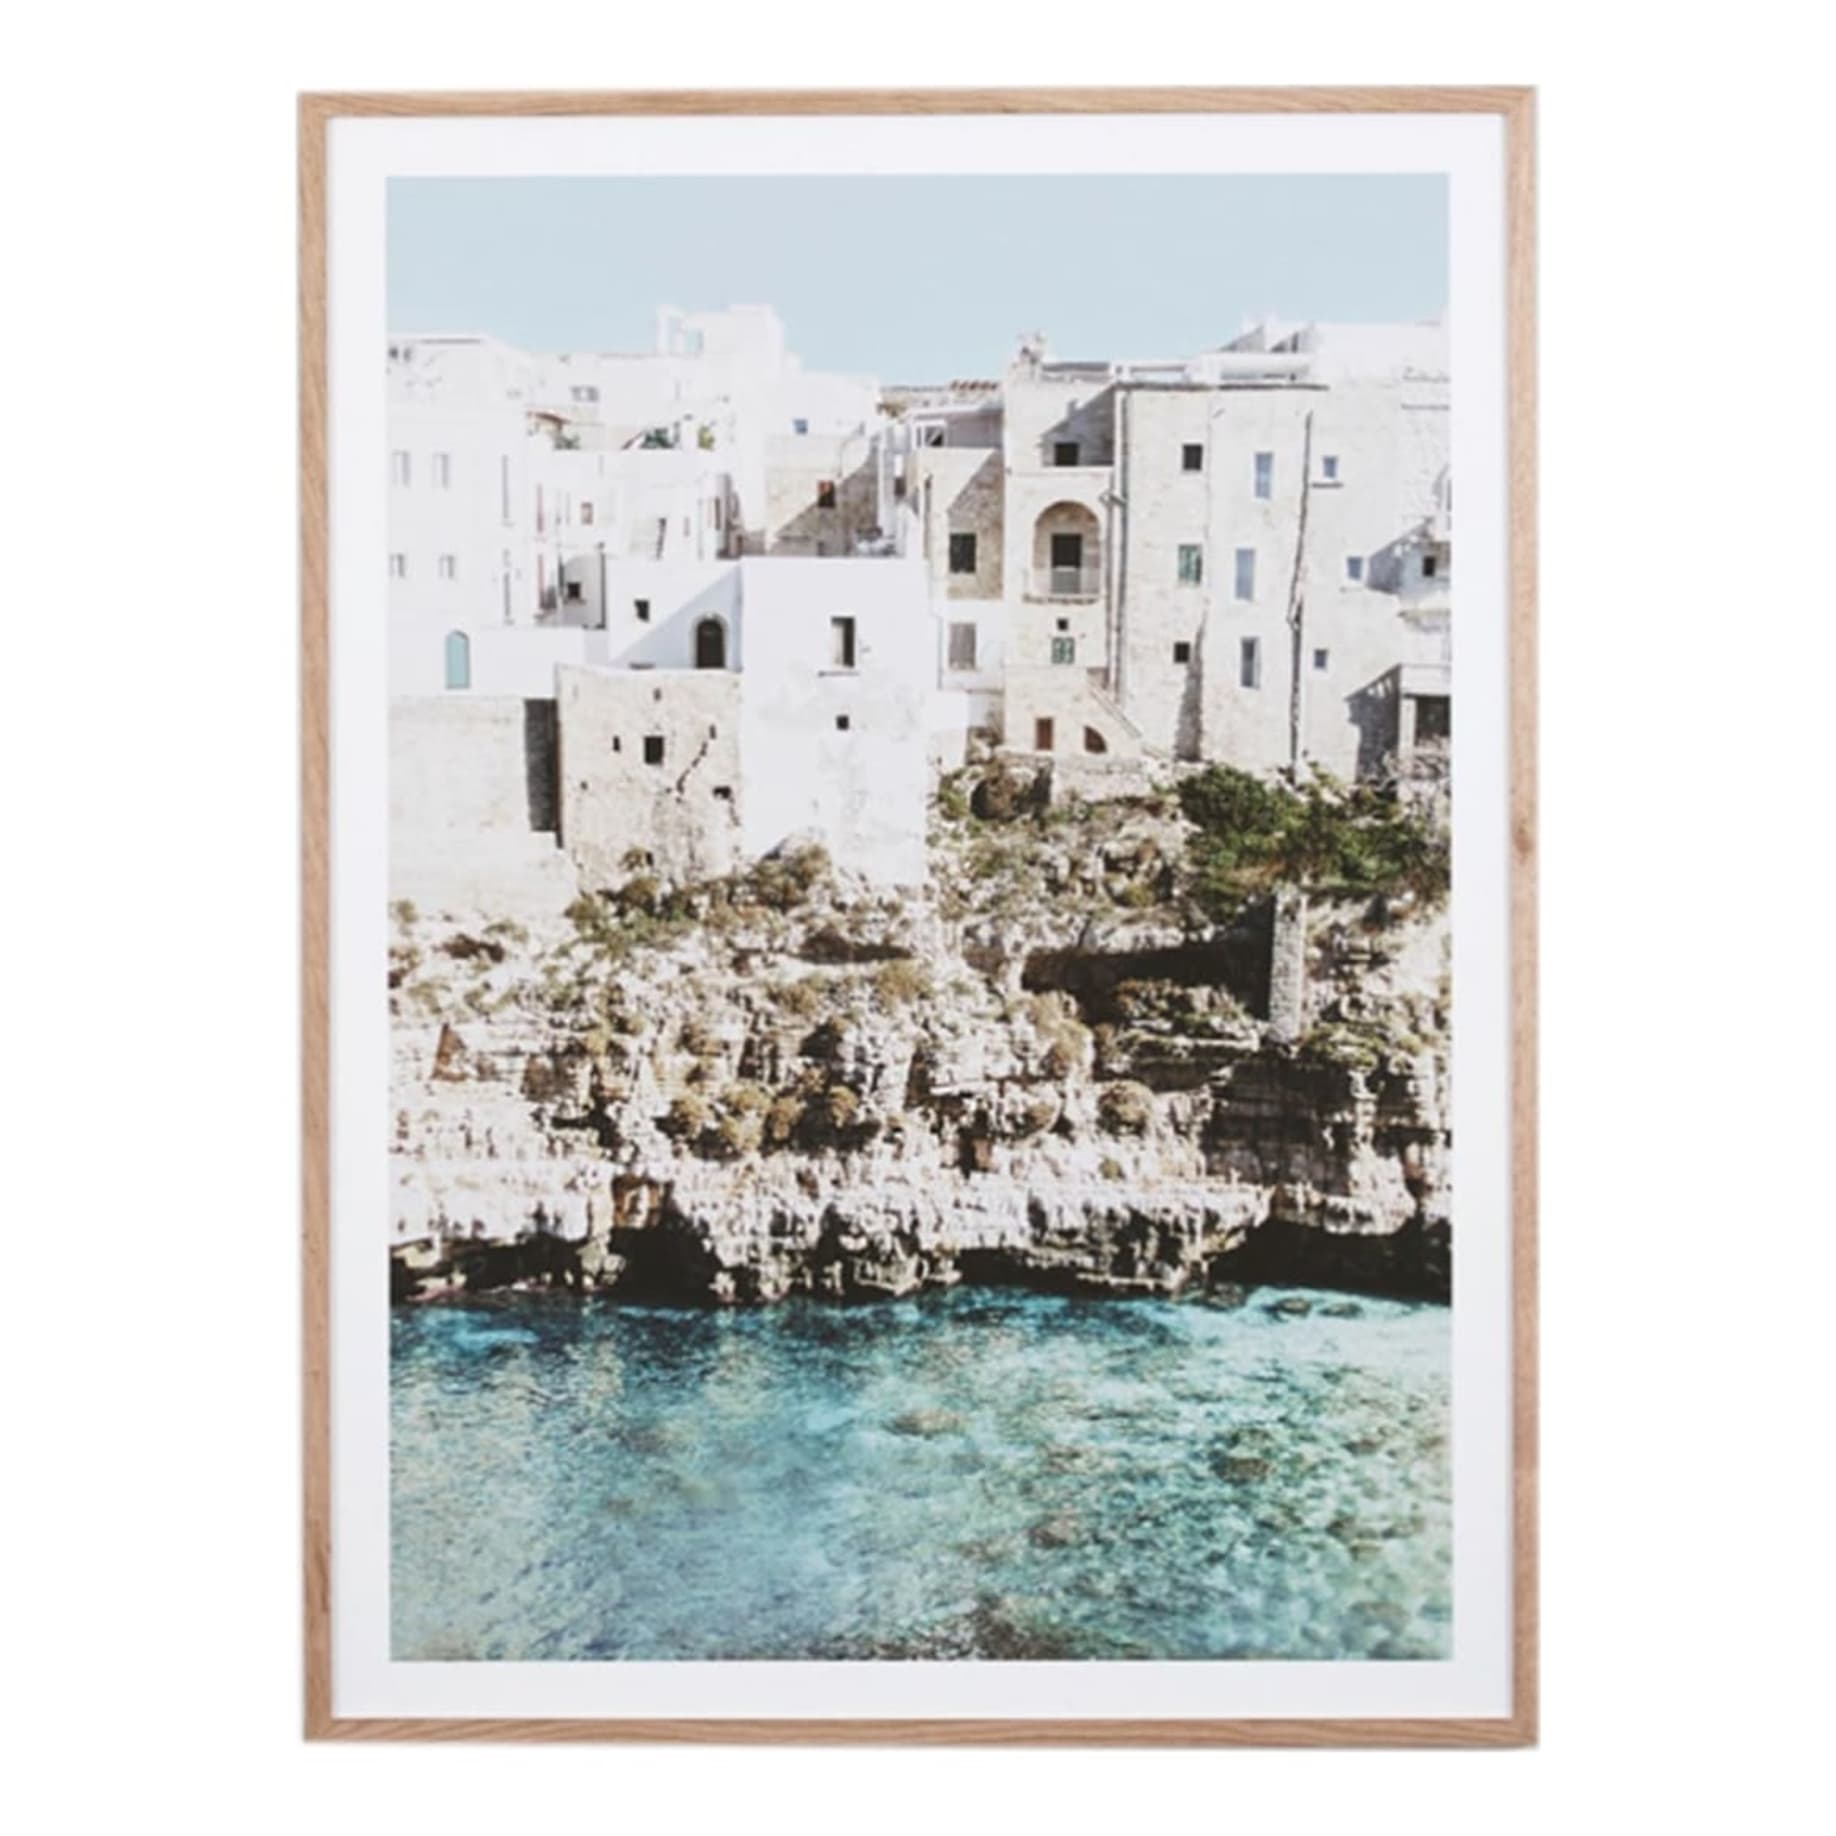 Amalfi Village Framed Print in 45 x 62cm